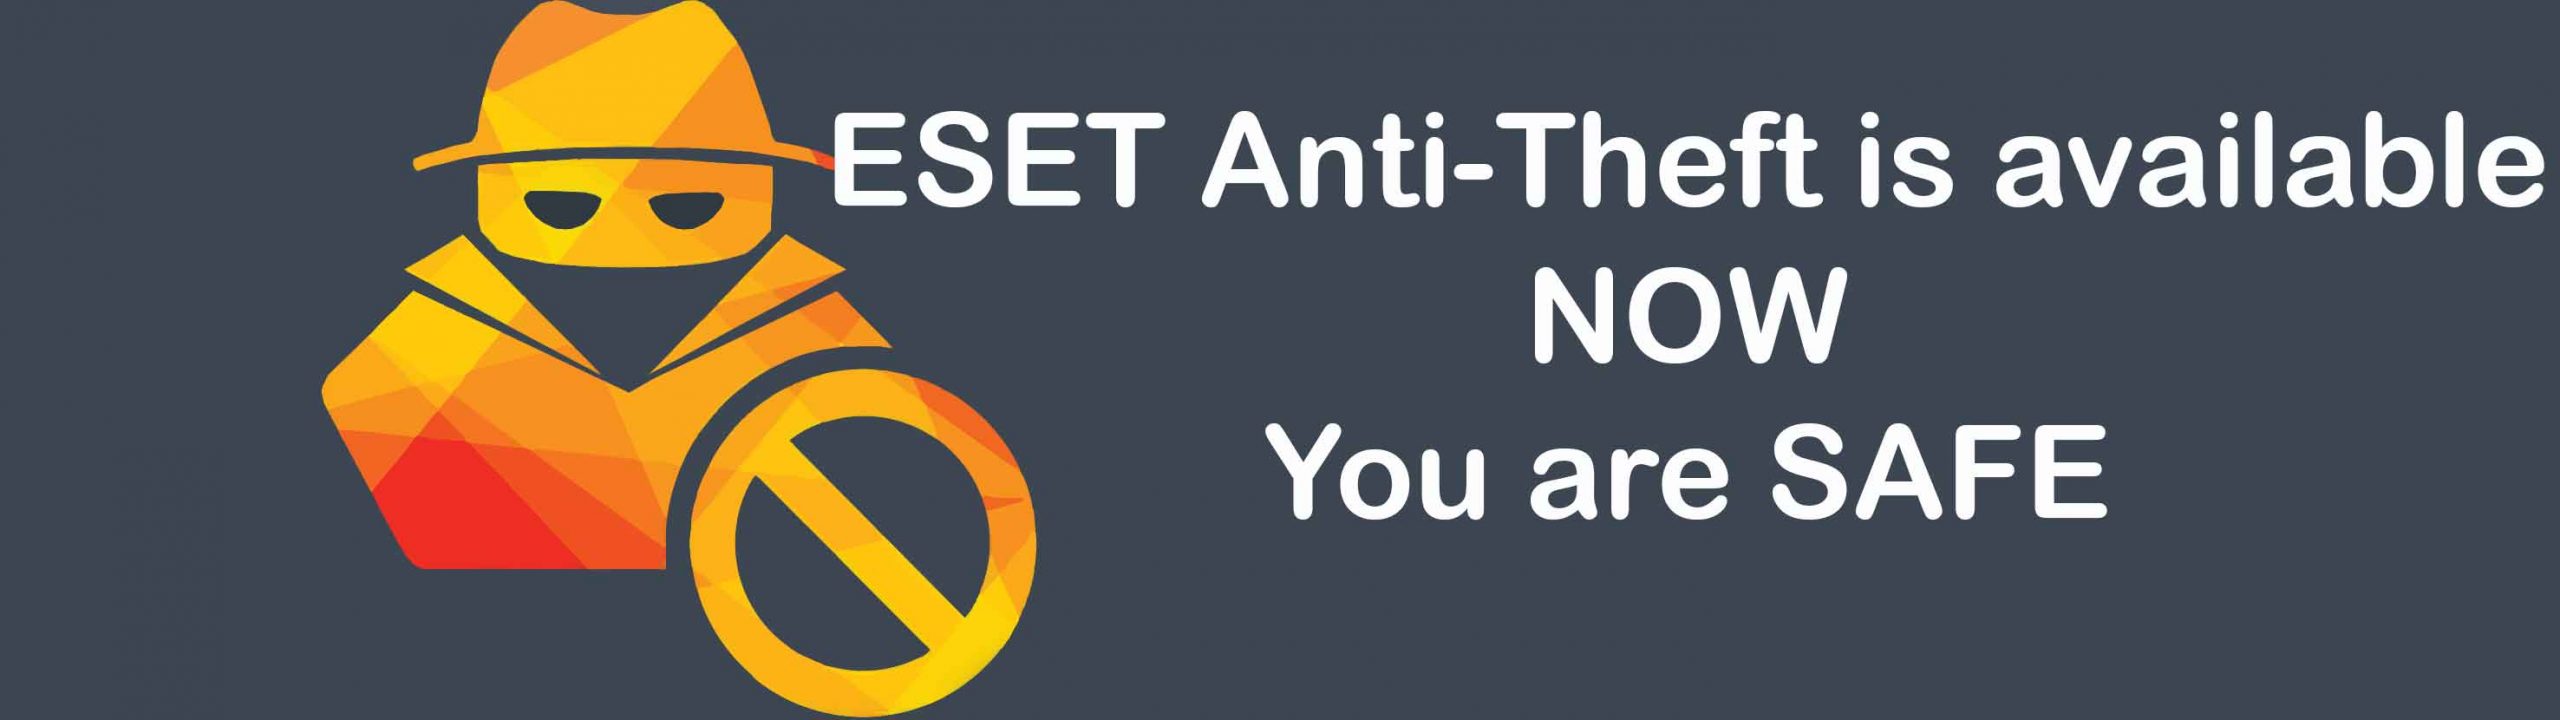 ESET Anti-Theft را فعال کنید.